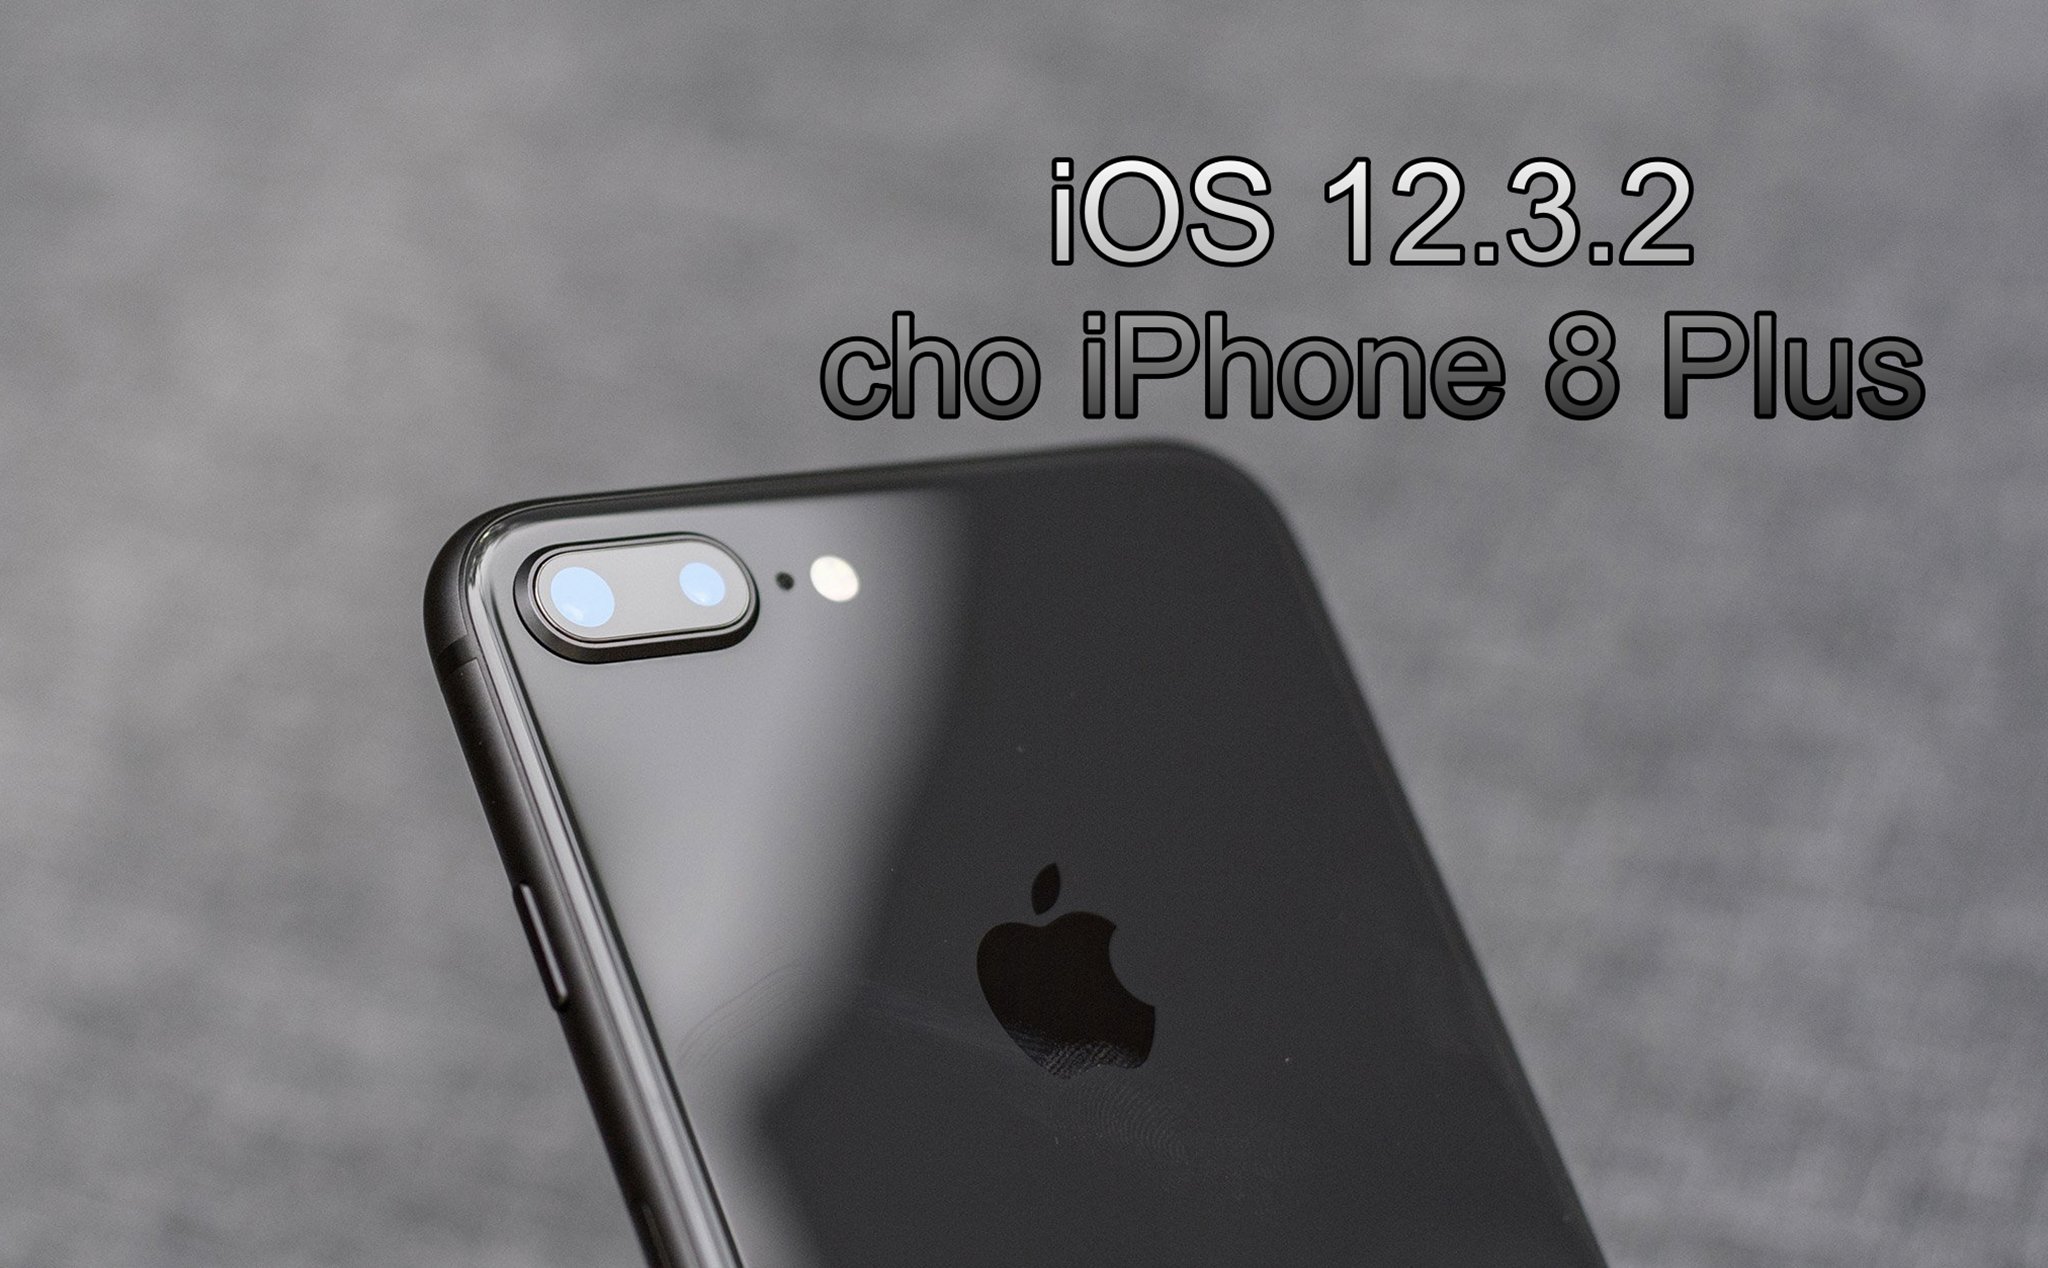 Apple tung bản cập nhật iOS 12.3.2 dành riêng cho iPhone 8 Plus: Sửa lỗi chụp chân dung